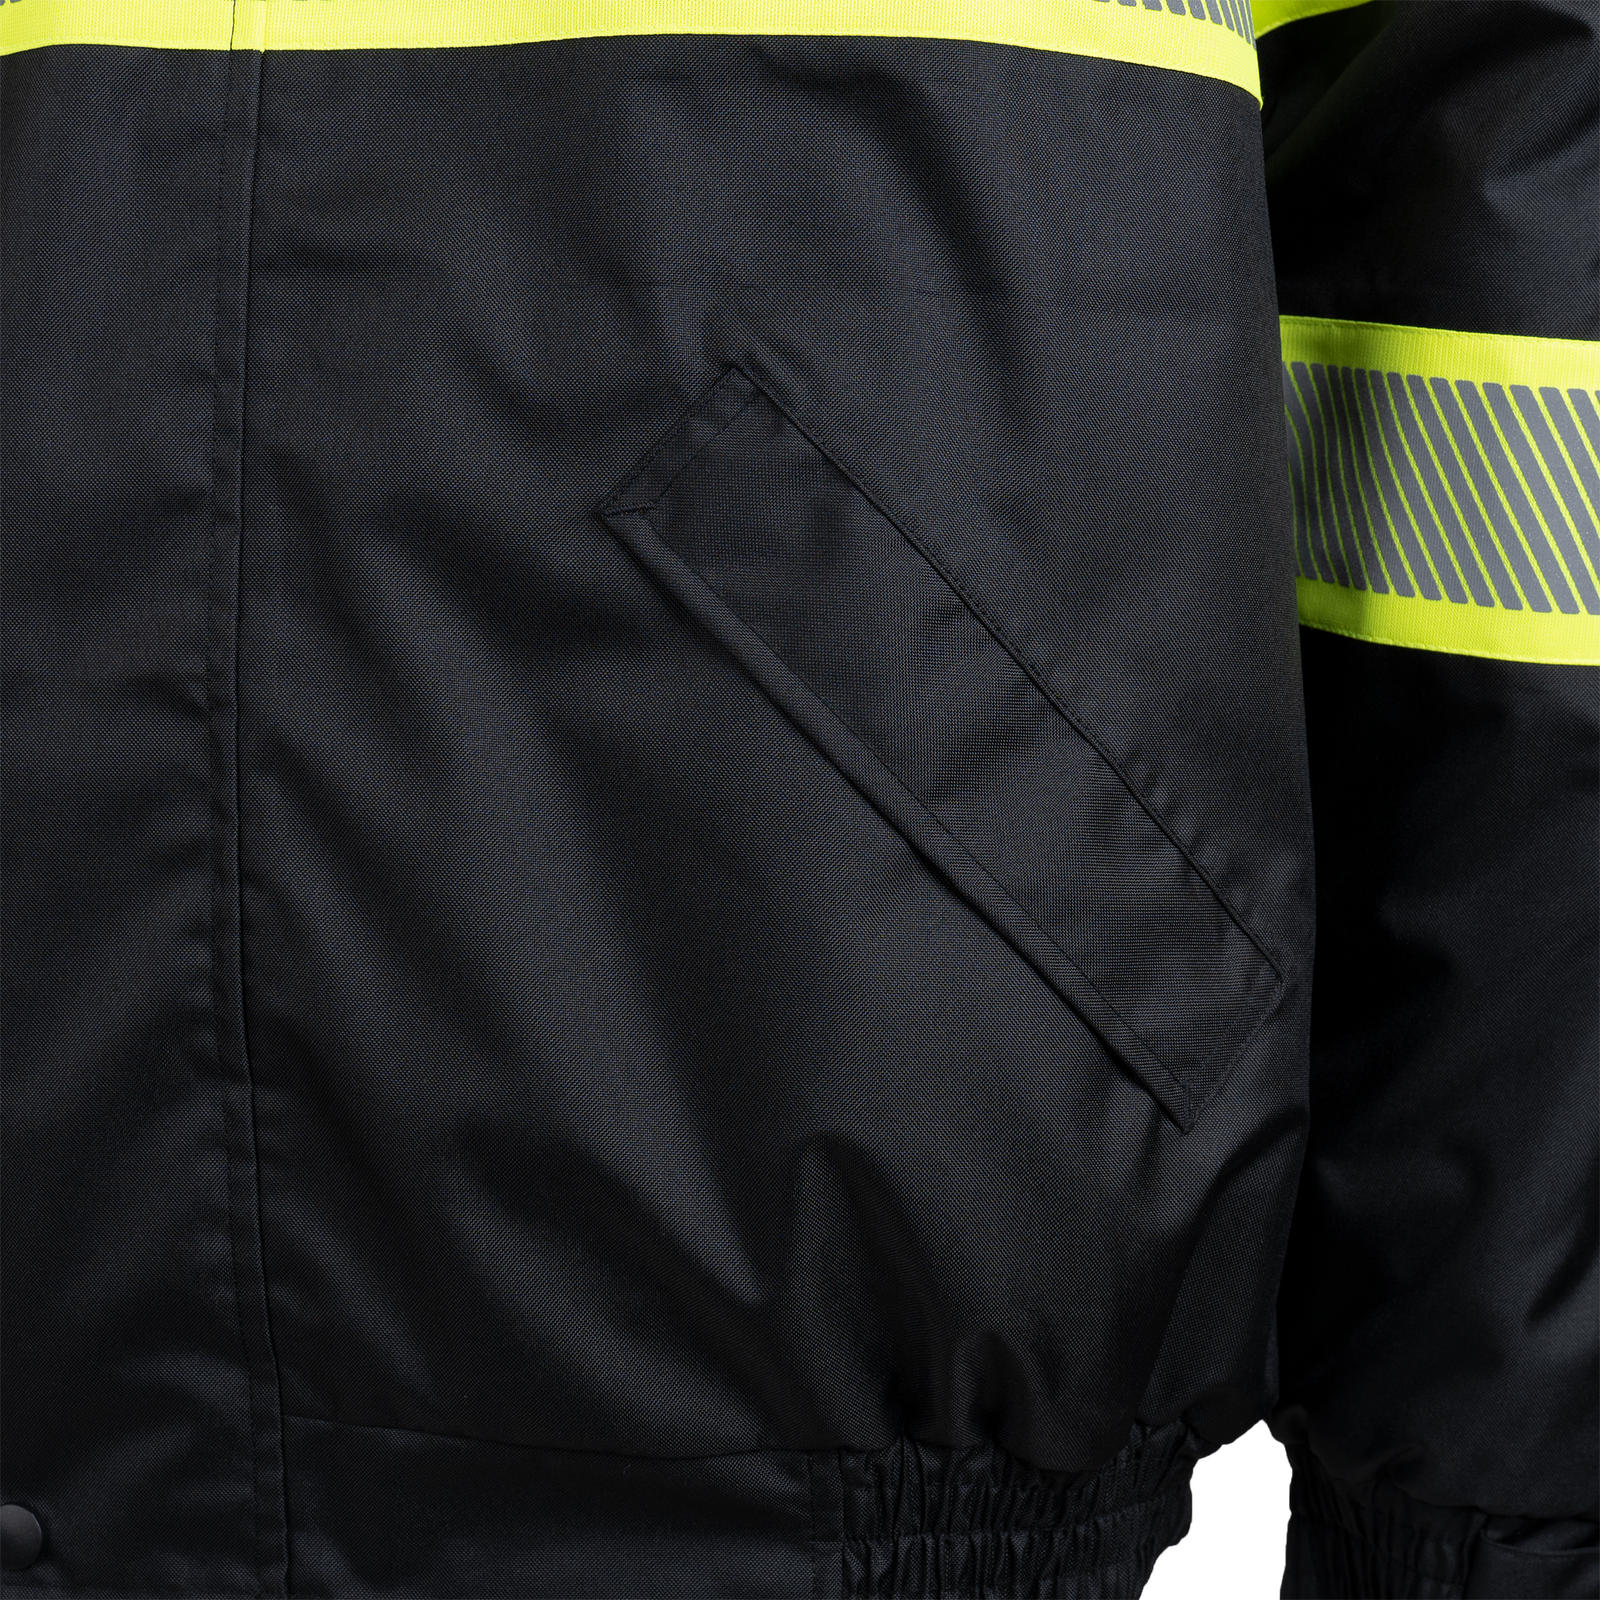 Black Hi-vis safety bomber jacket with heat transfer reflective tapes, contrasting hi vis background and pockets